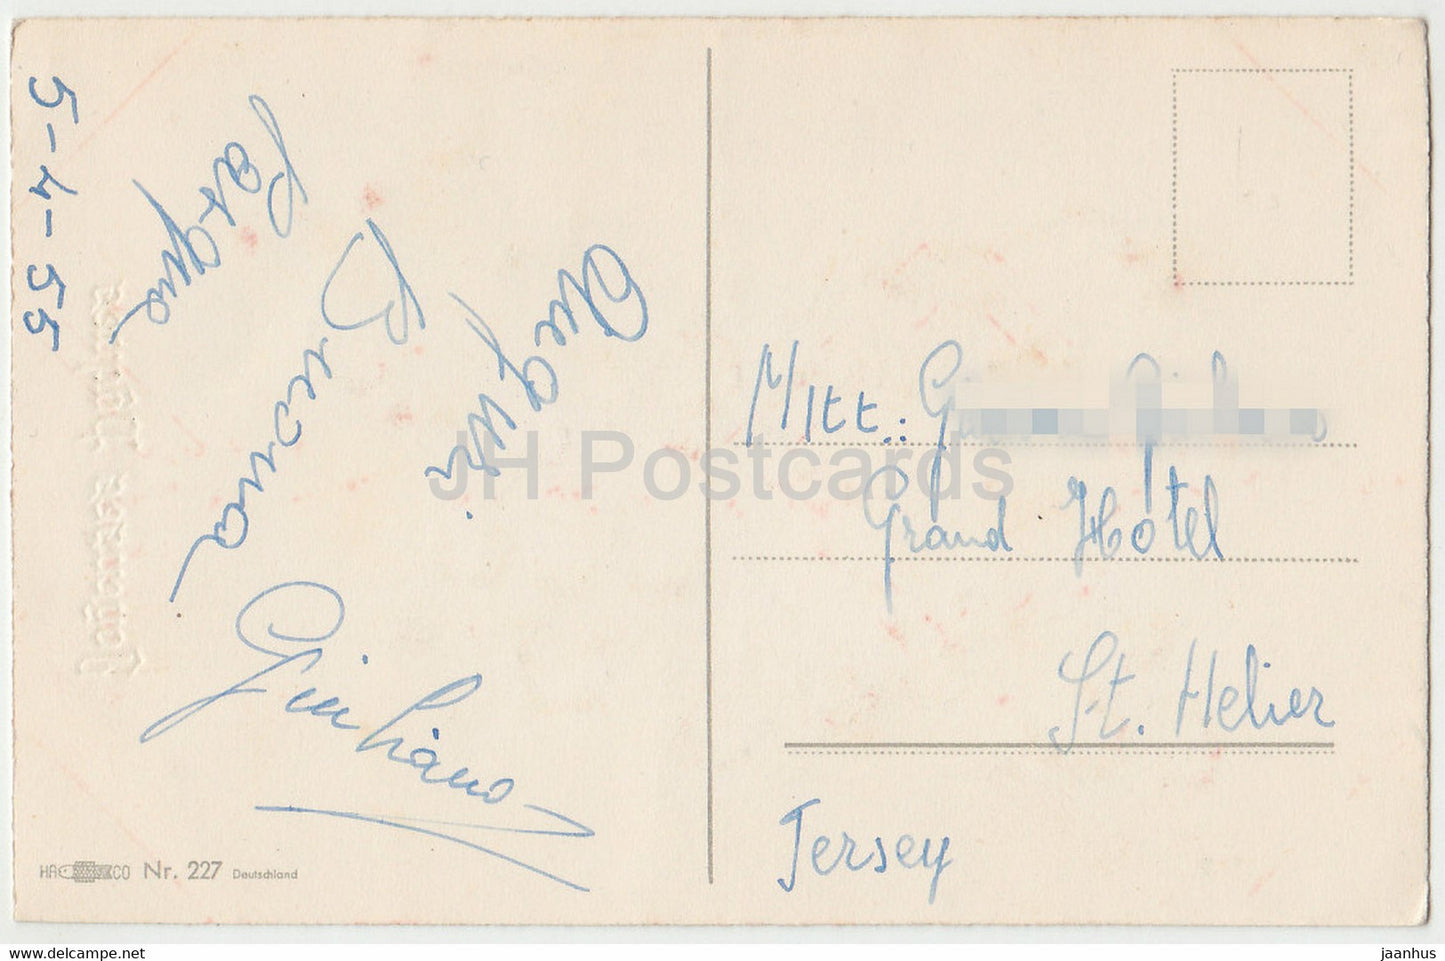 Carte de voeux de Pâques - Joyeuses Paques - fleurs - tulipes - HACO - 227 illustration - carte postale ancienne 1955 - France - occasion